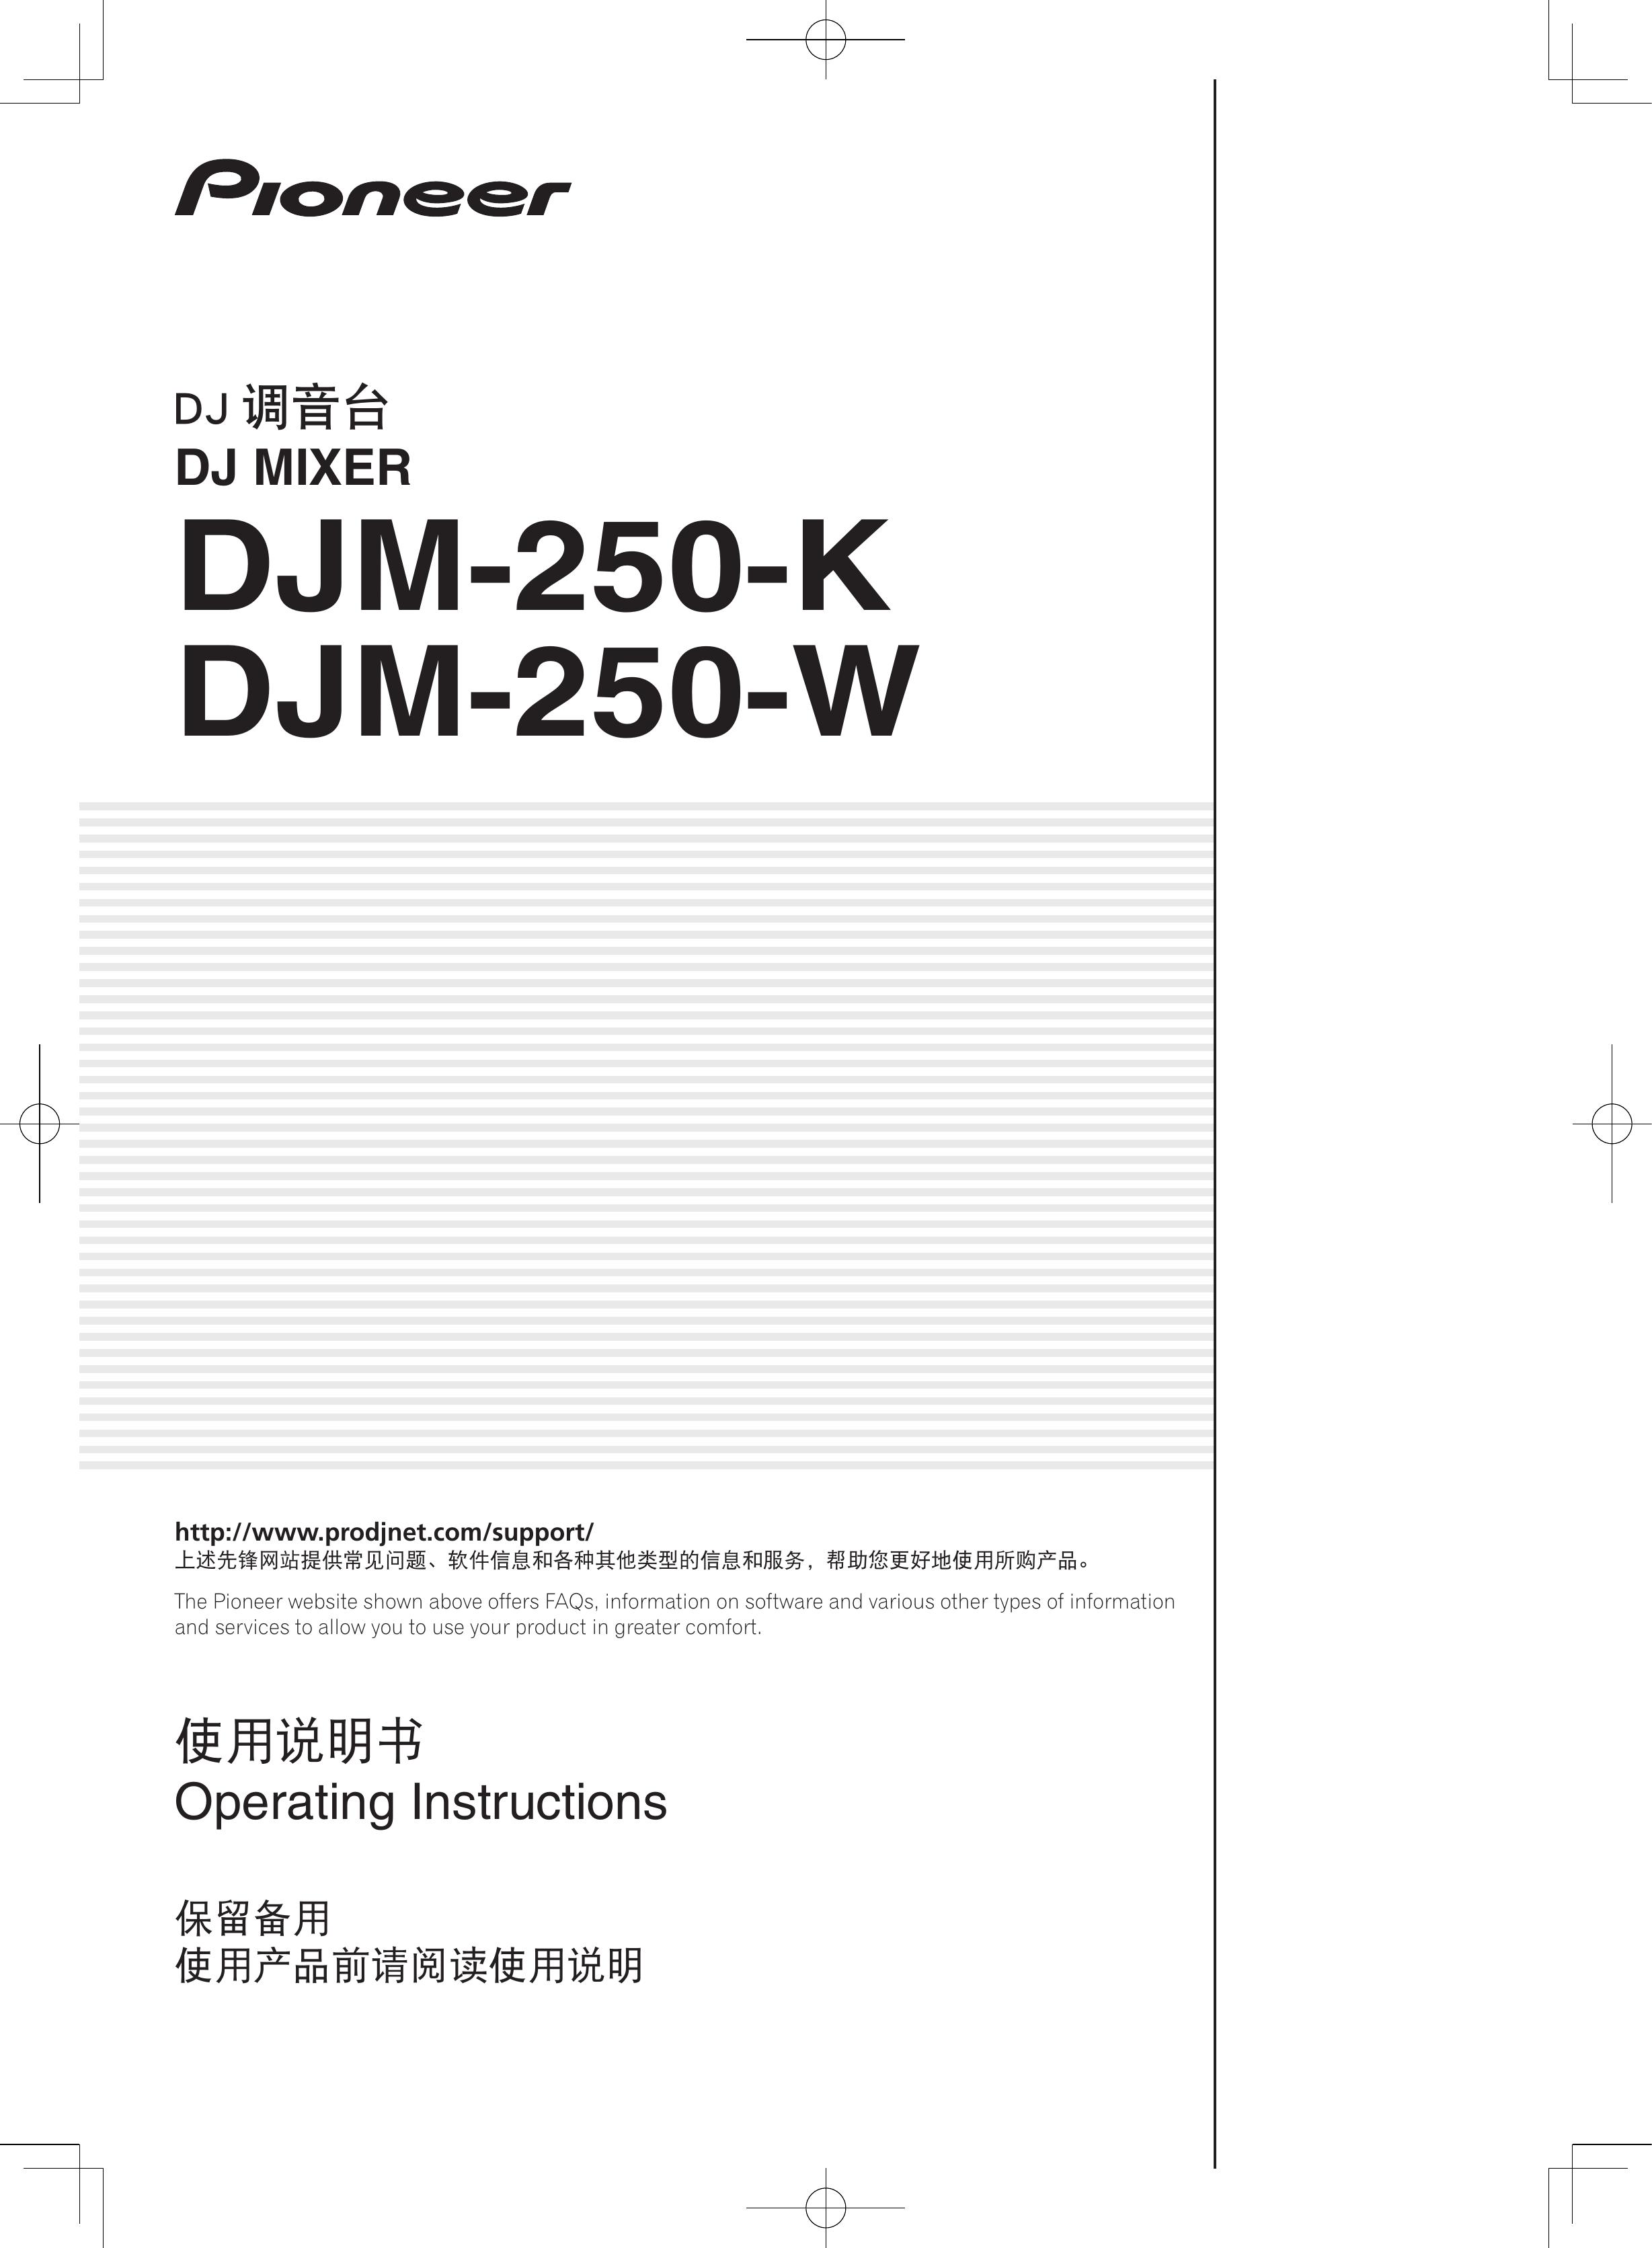 Pioneer DJM-250-K Music Mixer User Manual